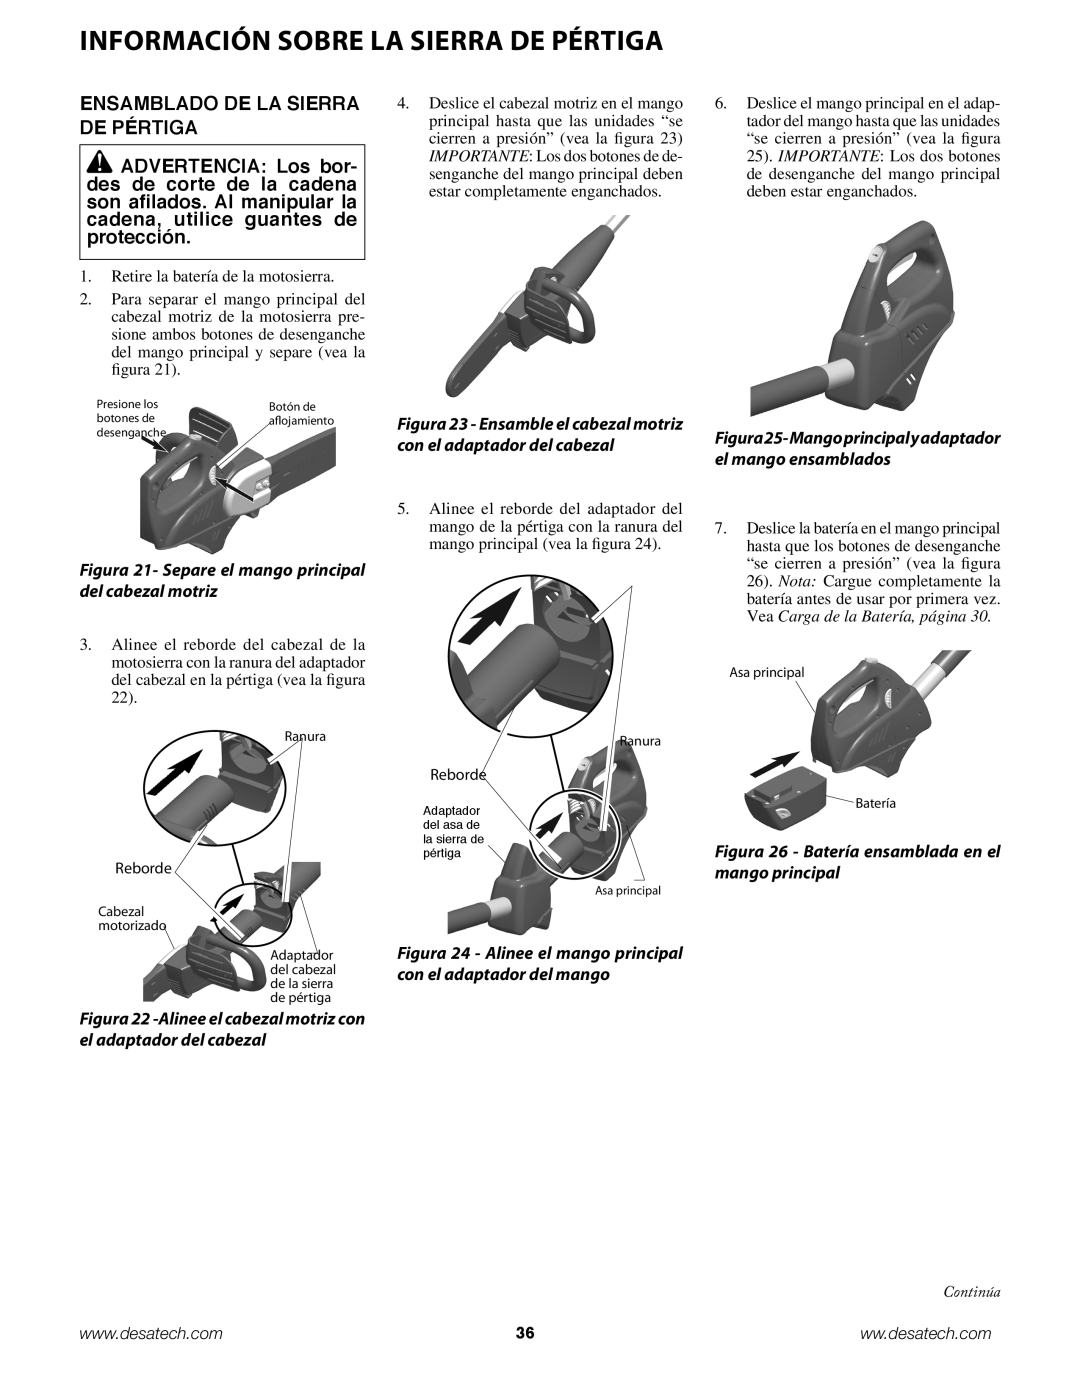 Remington Power Tools BPS188A, BS188A Información sobre la sierra de PÉRTIGA, Ensamblado de la sierra de pértiga 